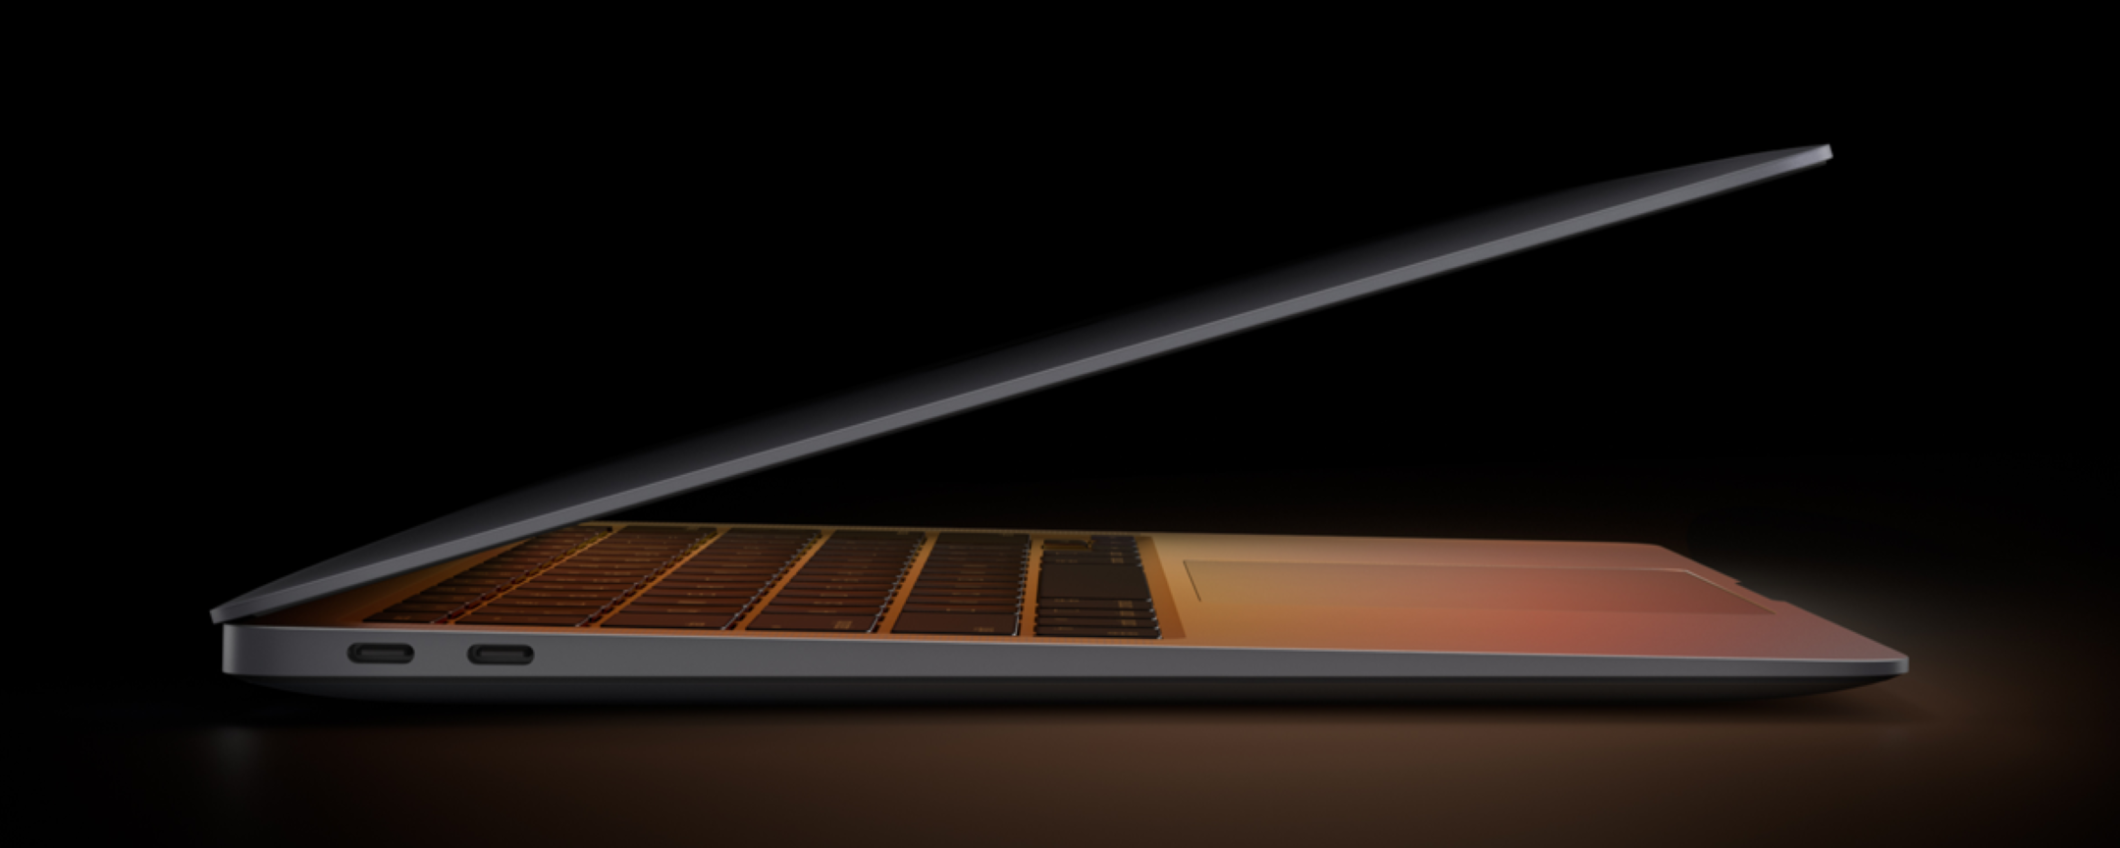 MacBook Air M1 torna in offerta a 849€ con la campagna 